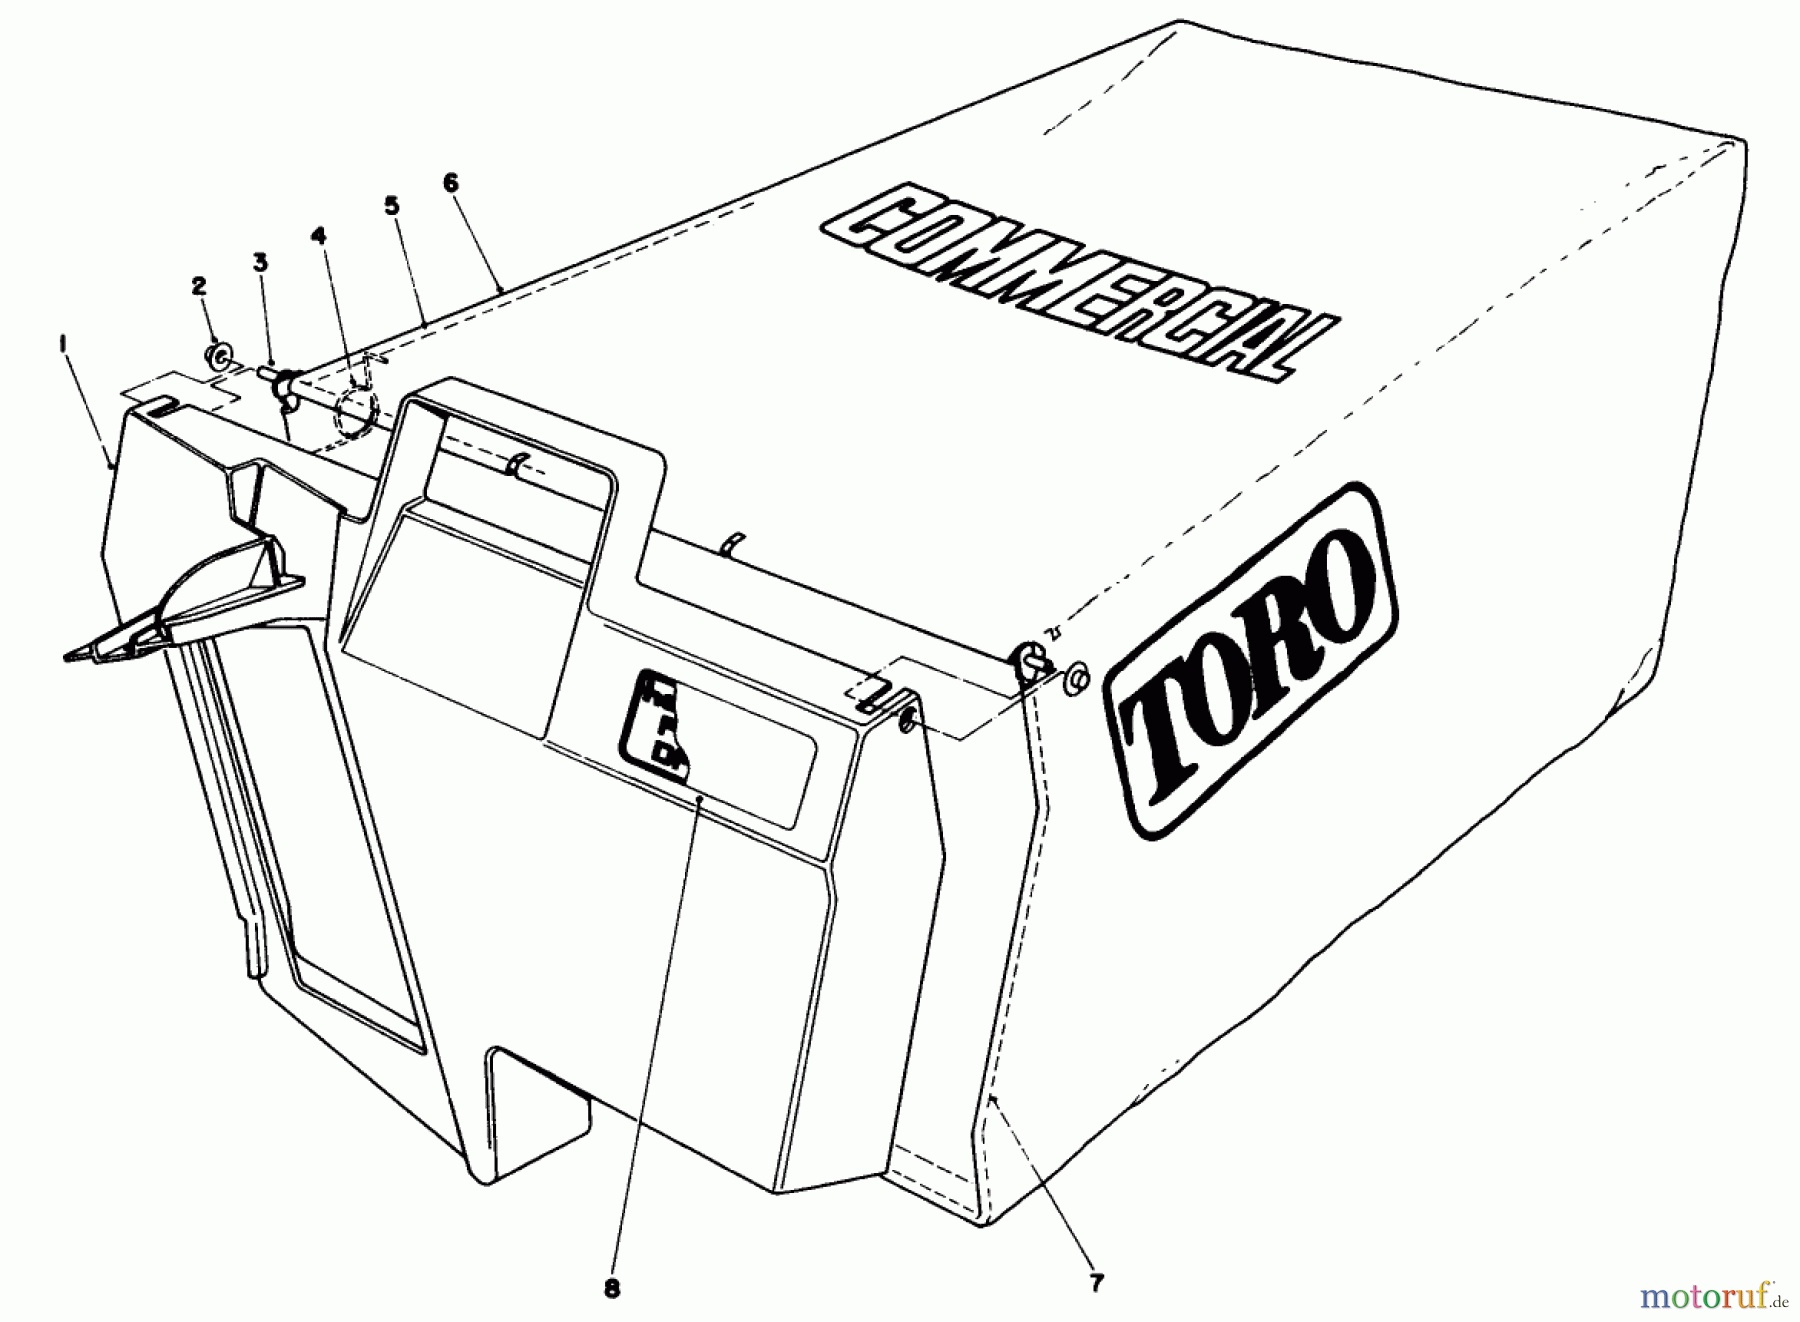  Toro Neu Mowers, Walk-Behind Seite 2 22621 - Toro Lawnmower, 1988 (8000001-8999999) GRASS BAG ASSEMBLY NO. 11-5609